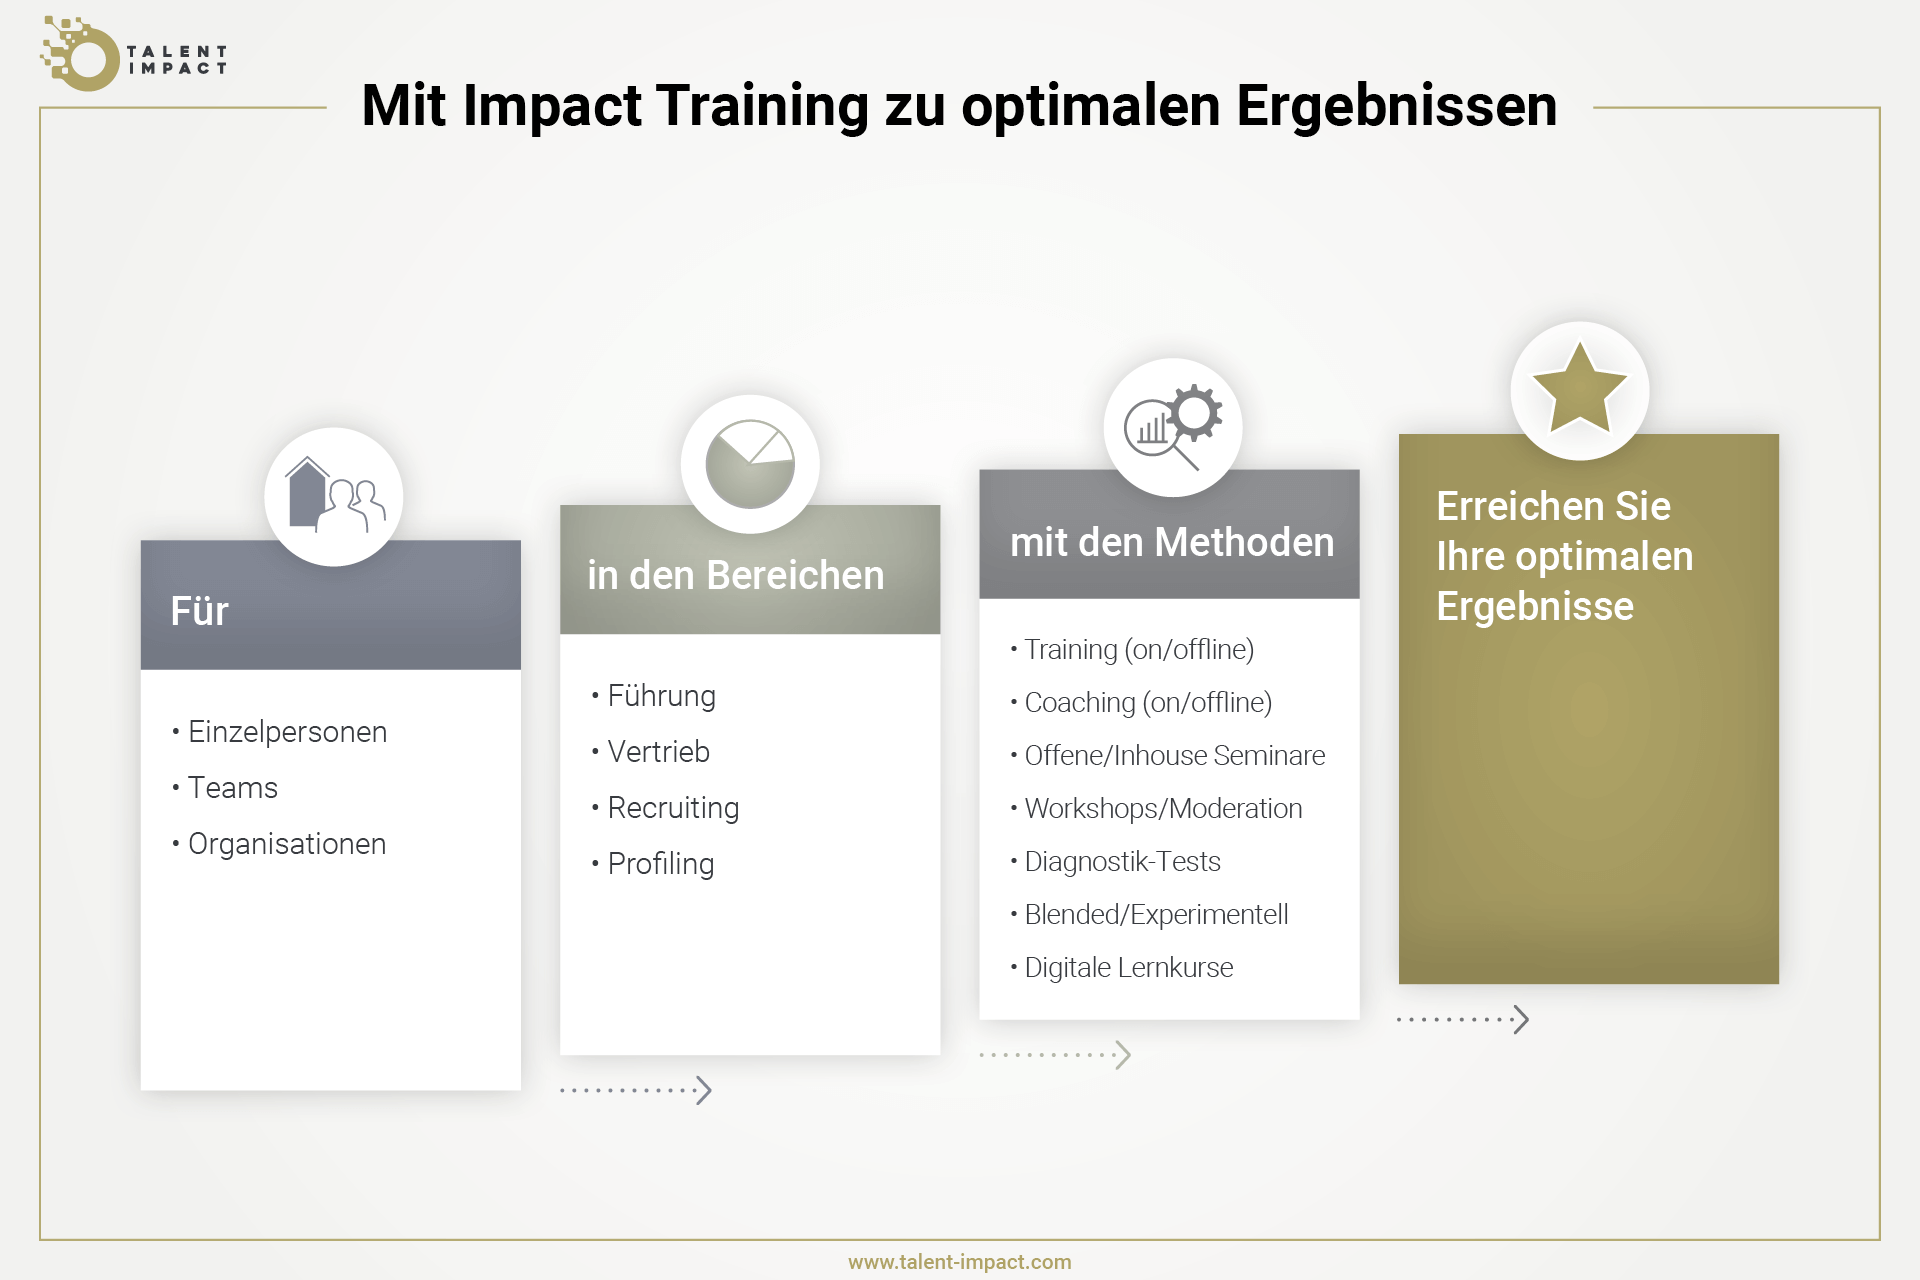 Grafik, die zeigt, wie Talent Impact Training mit Blended und experimentellen Kursinhalten kombiniert, um optimale Lernergebnisse zu erhalten